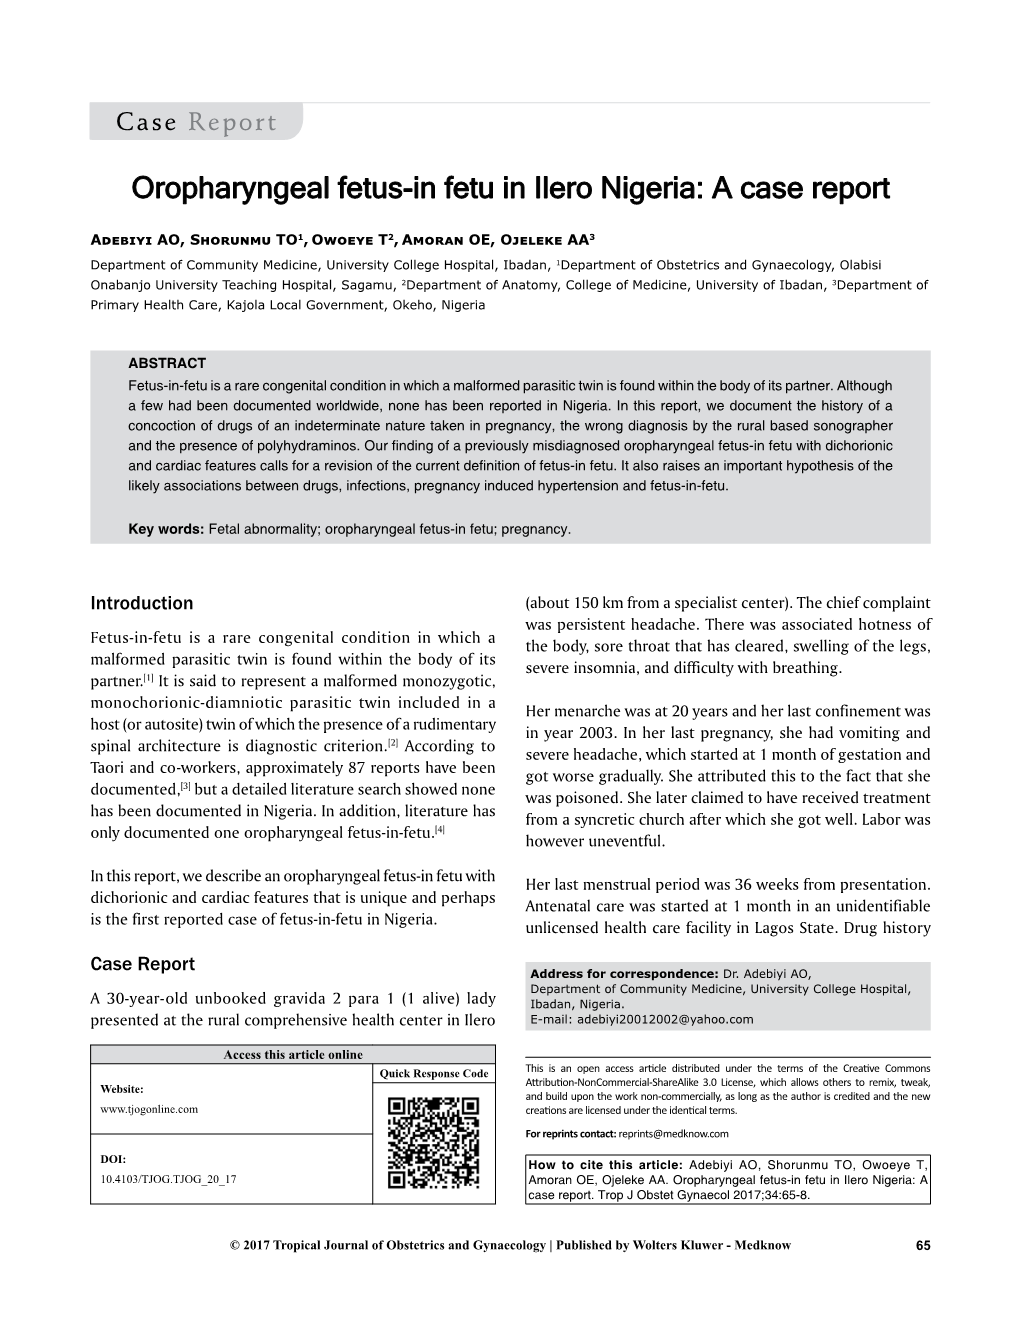 Oropharyngeal Fetus-In Fetu in Ilero Nigeria: a Case Report